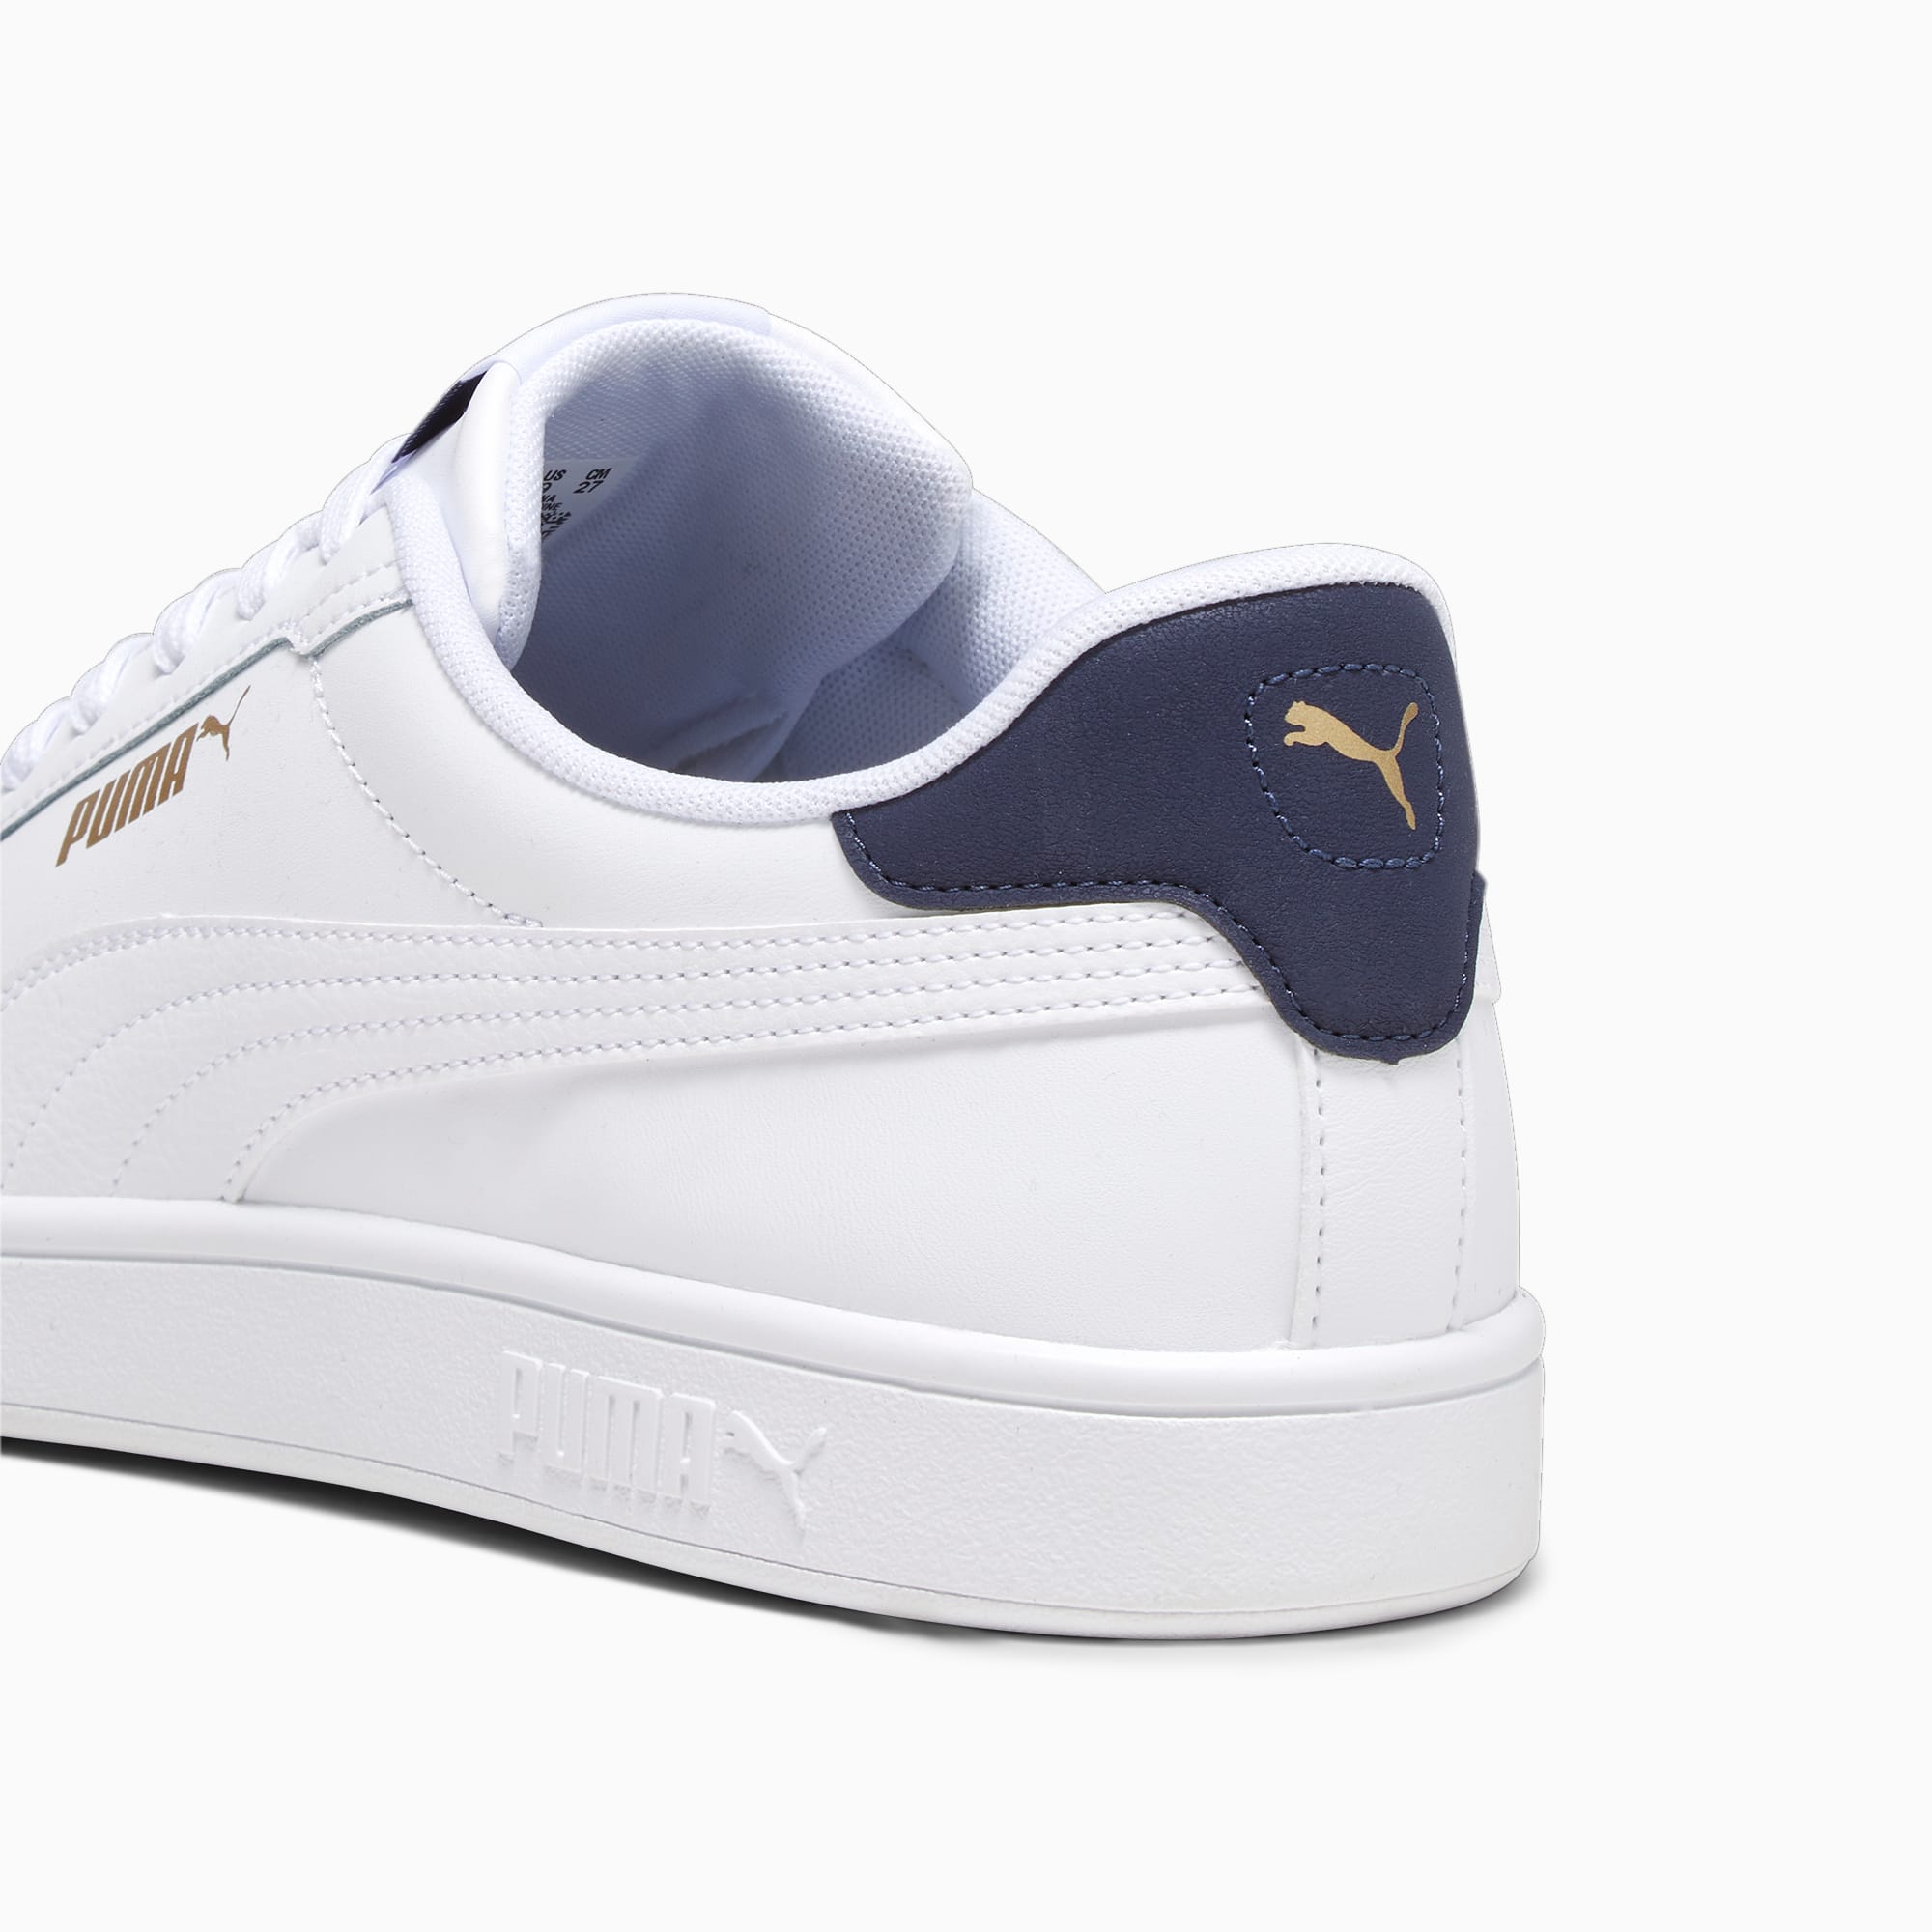 PUMA Smash Retro Sneakers  PUMA White-Warm White-Gold-For All